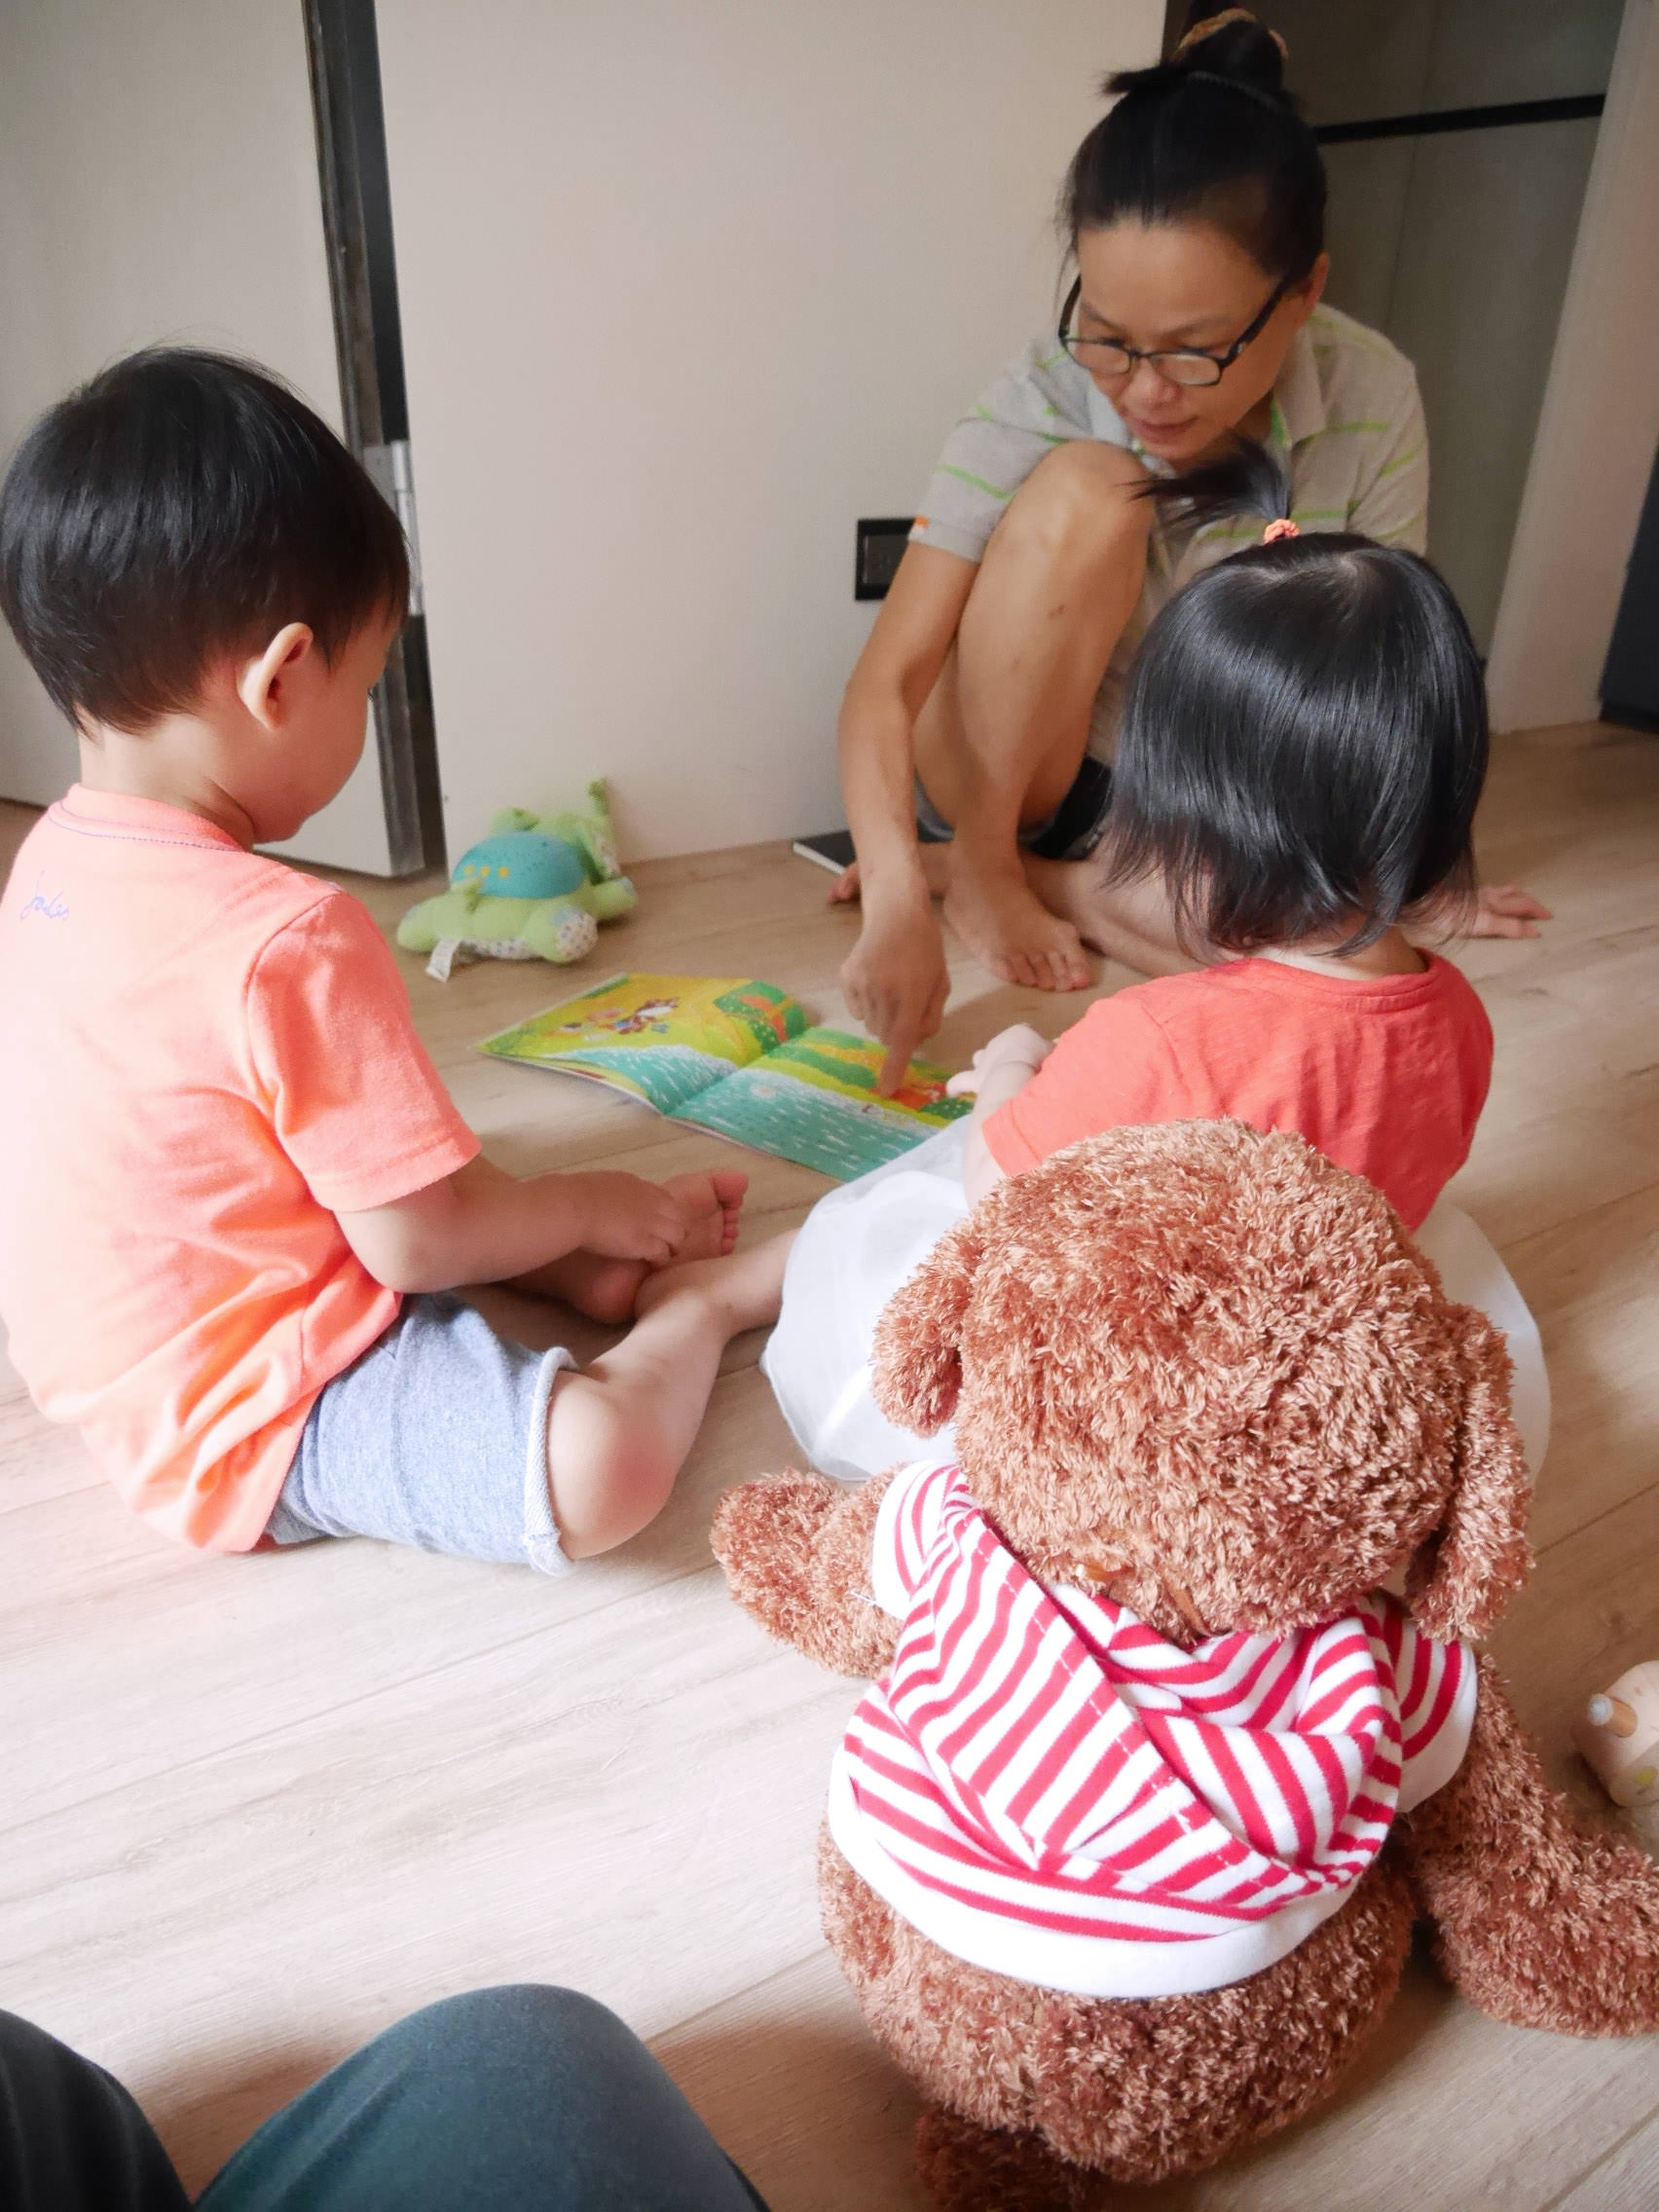 [育兒好物] 給小朋友聽覺及觸覺的滿足,有教養意義又超可愛的療癒故事機-愛智Hello寶寶故事機